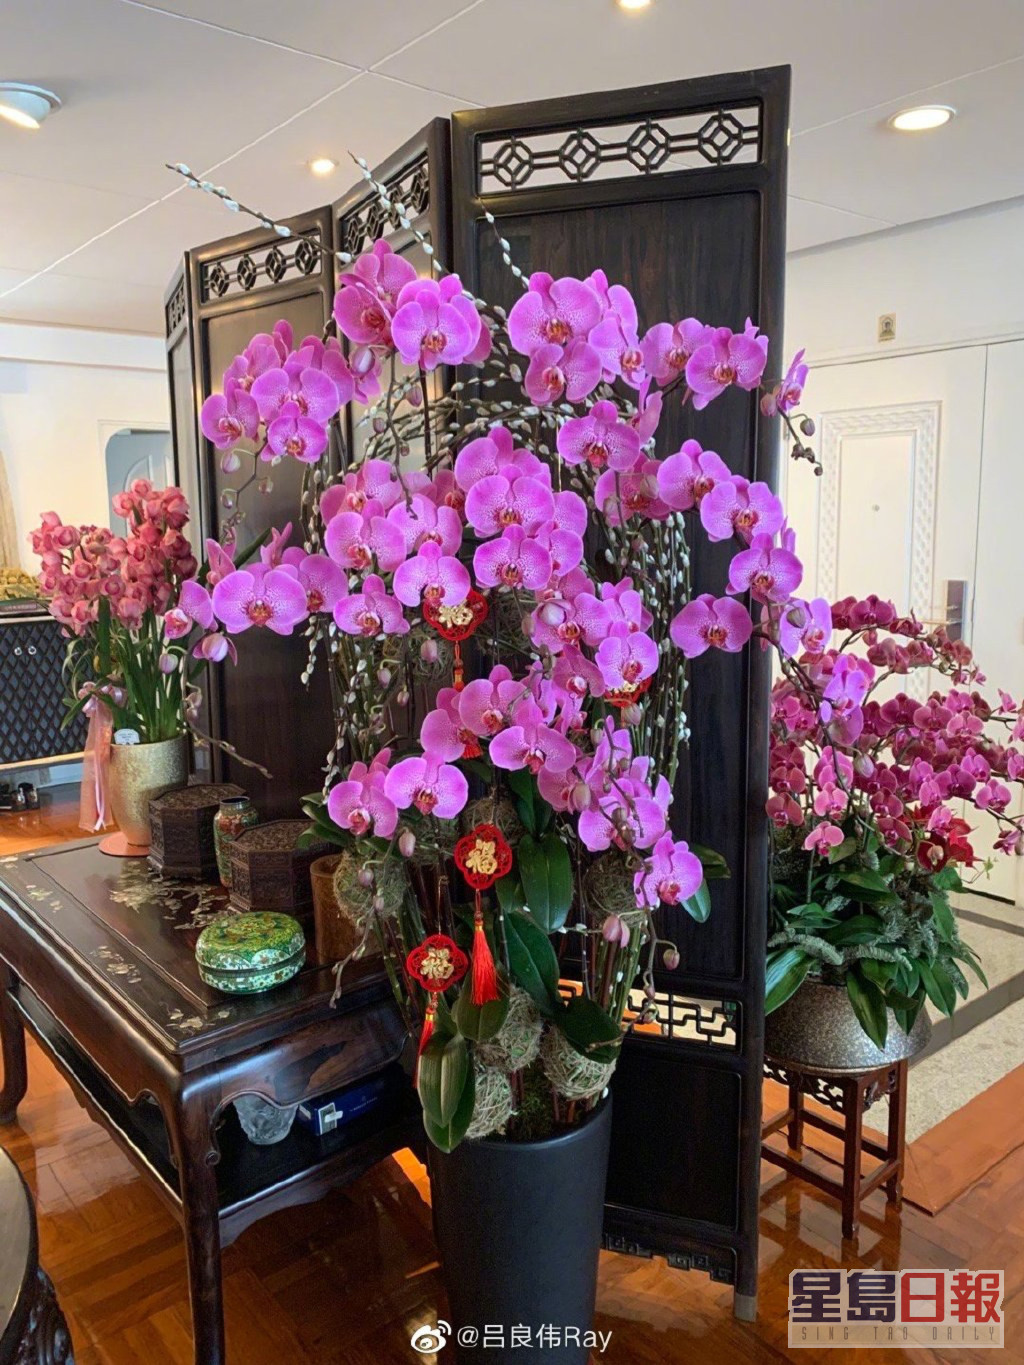 杨小娟在家中摆放了不少花及盆栽。